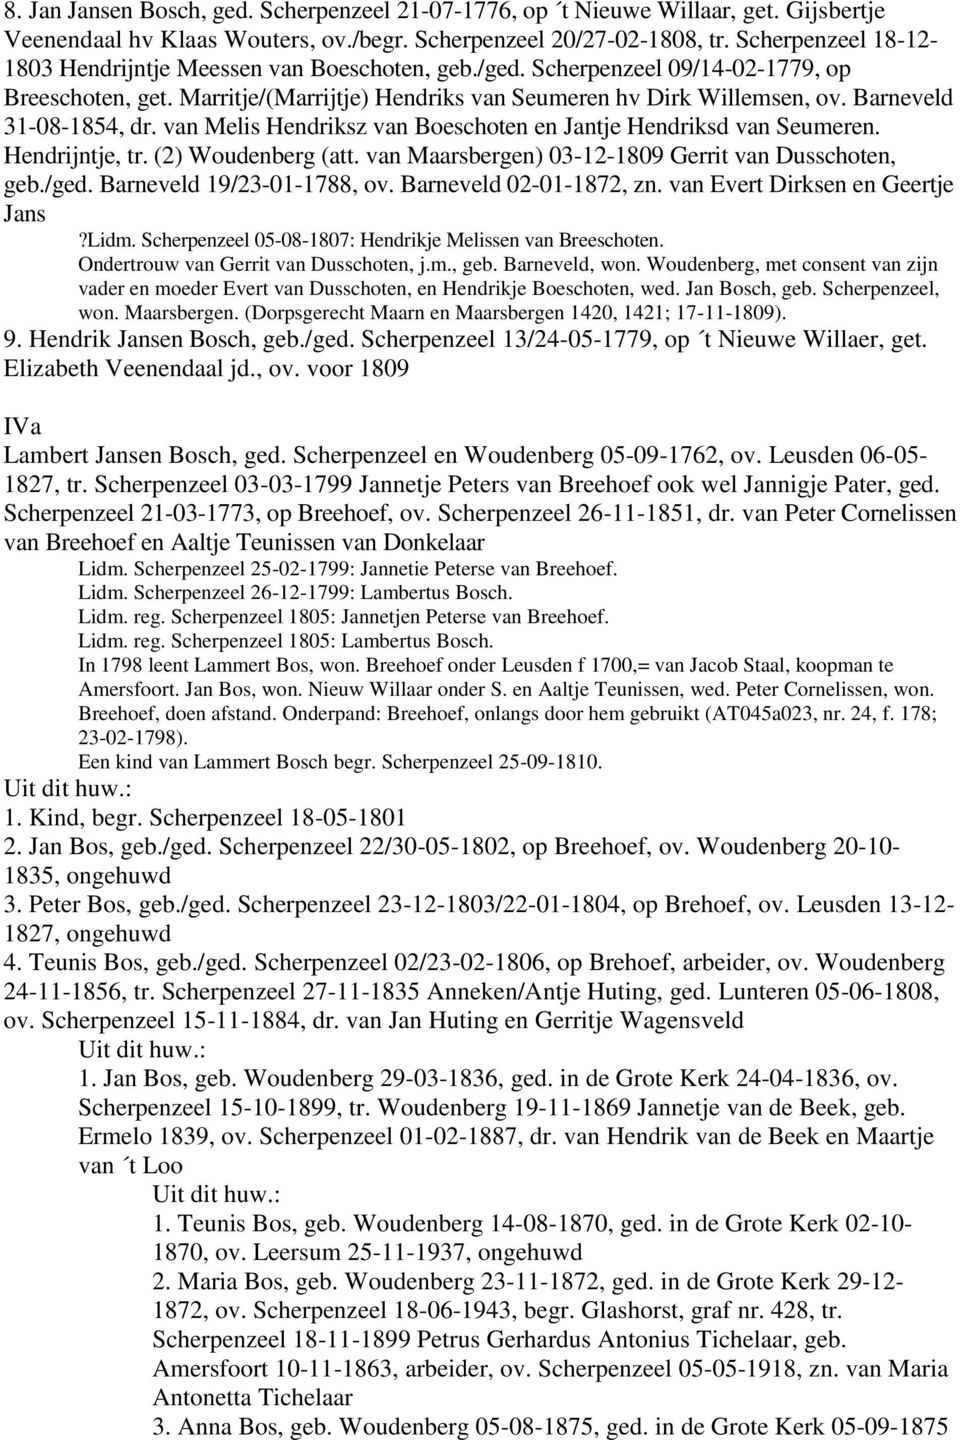 Barneveld 31-08-1854, dr. van Melis Hendriksz van Boeschoten en Jantje Hendriksd van Seumeren. Hendrijntje, tr. (2) Woudenberg (att. van Maarsbergen) 03-12-1809 Gerrit van Dusschoten, geb./ged.